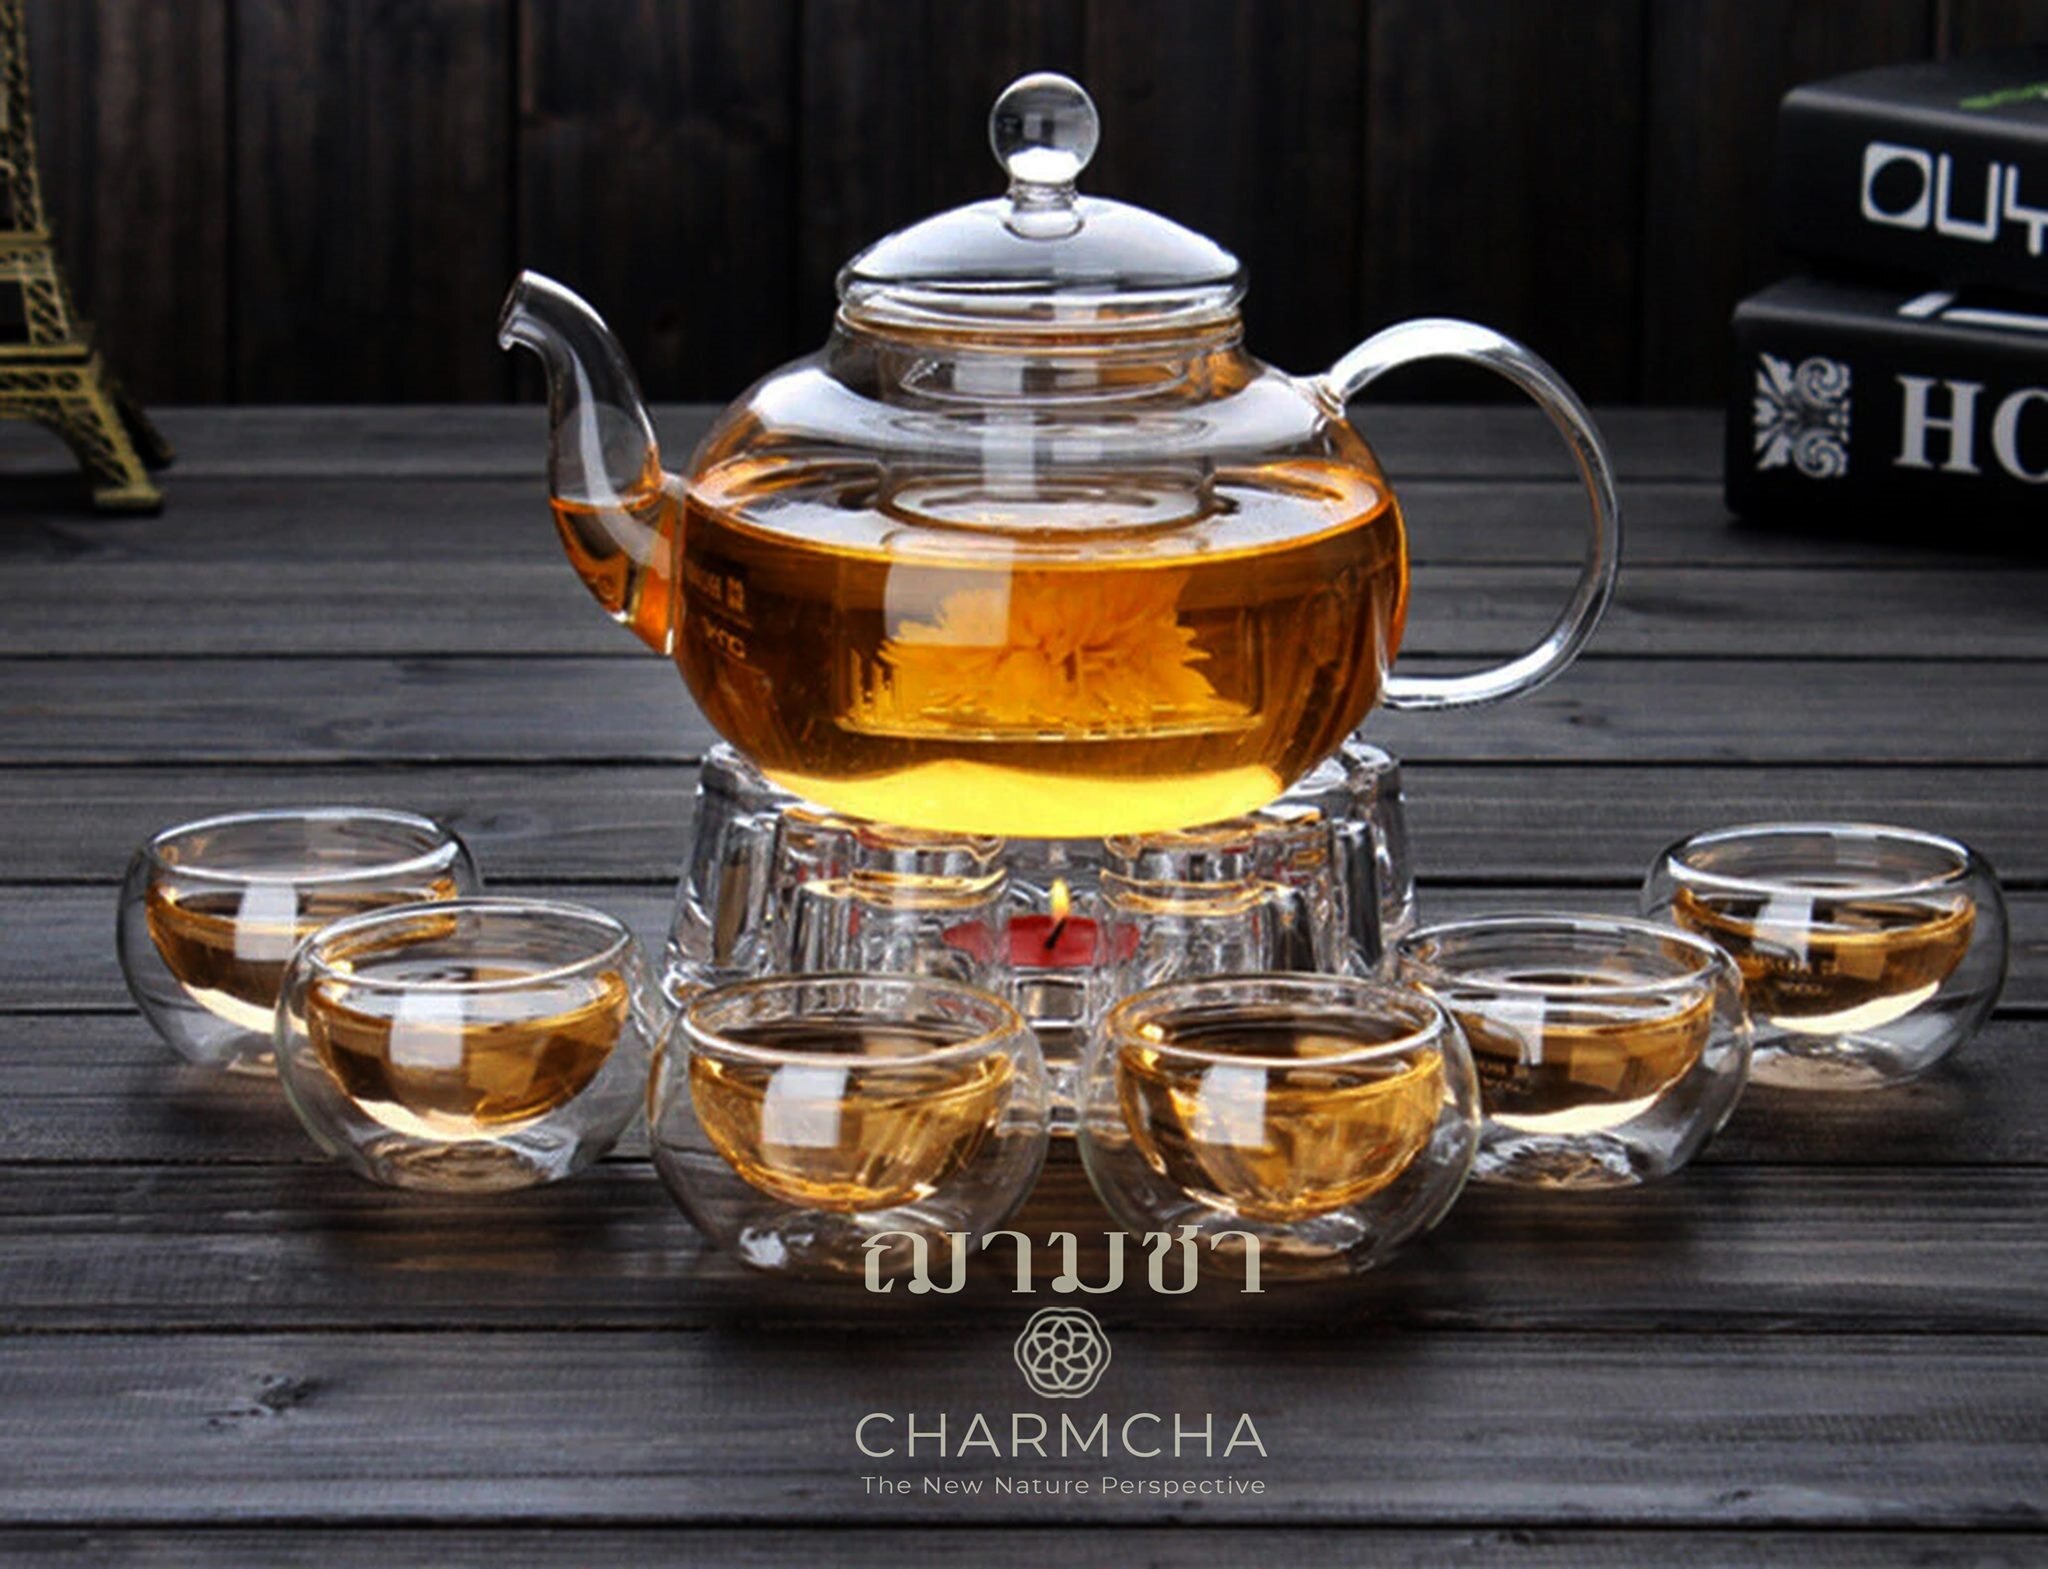 ถุกที่สุด!! ชุดกาน้ำชา600ml 1ชุด  มีตัวเลือกแก้ว 2-6 ใบ+ที่กรองชา+เตาอุ่น+เทียน ครบชุด ทำจากแก้ววางบนเตาความร้อนได้ charmcha ฌามชา ชุดของขวัญ